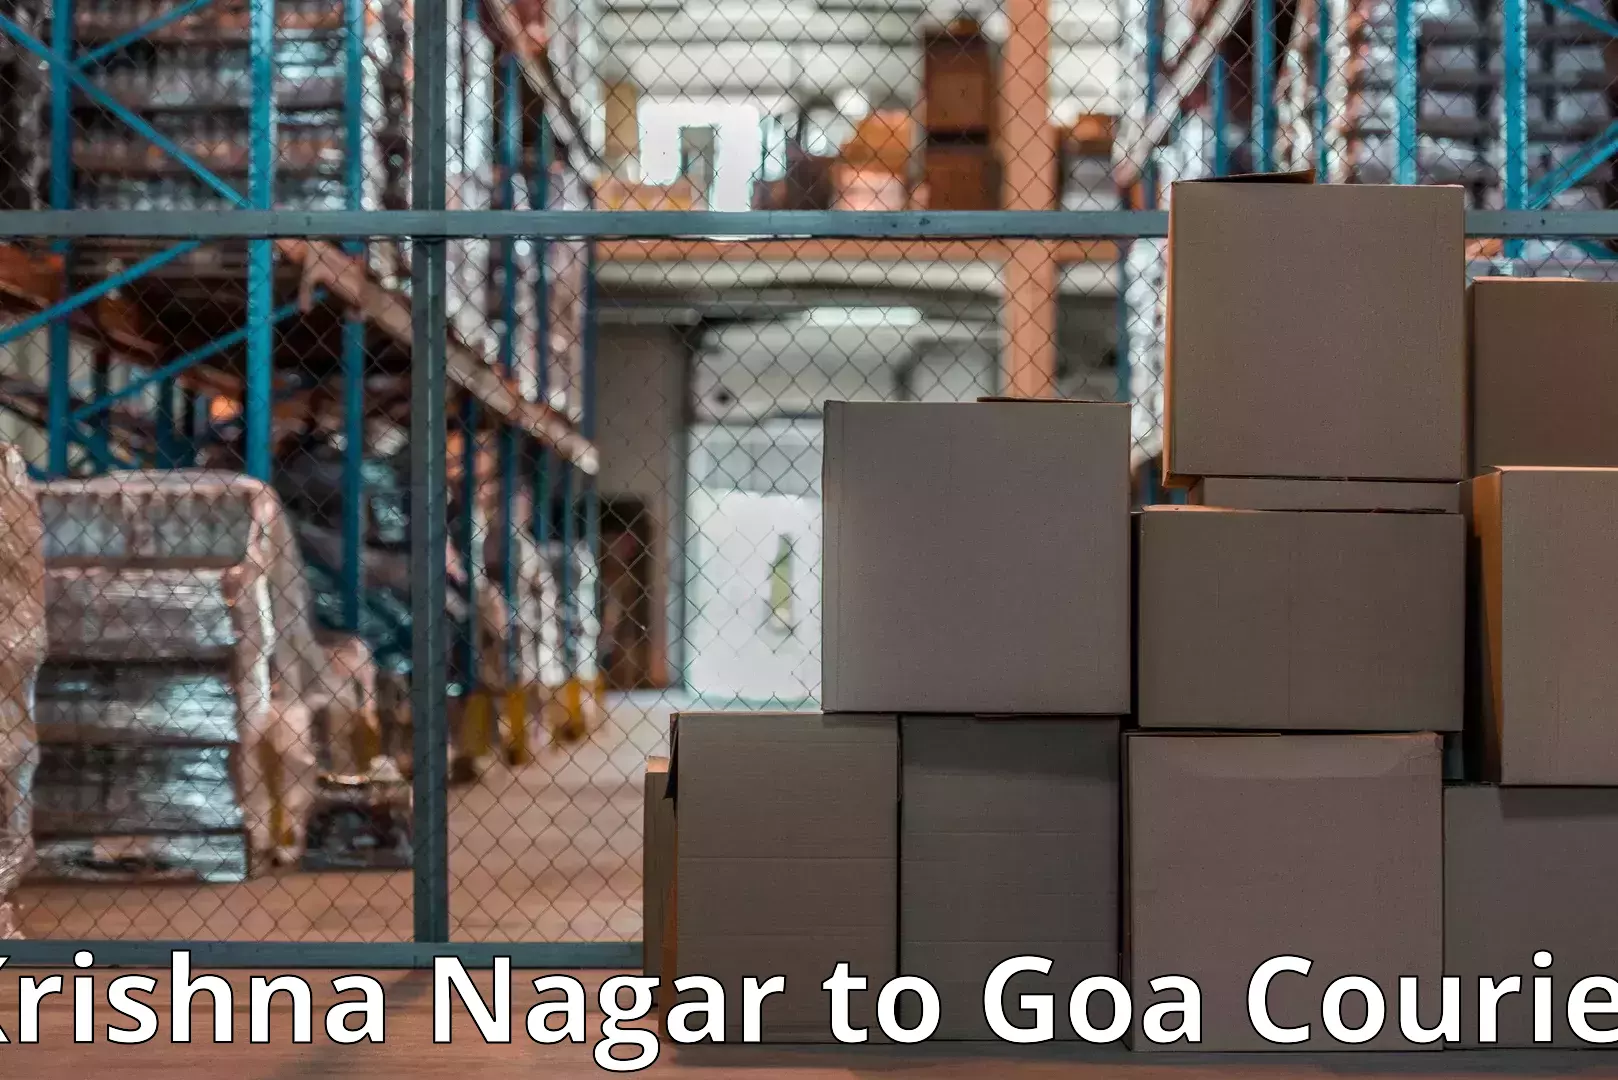 Door-to-door relocation services Krishna Nagar to South Goa